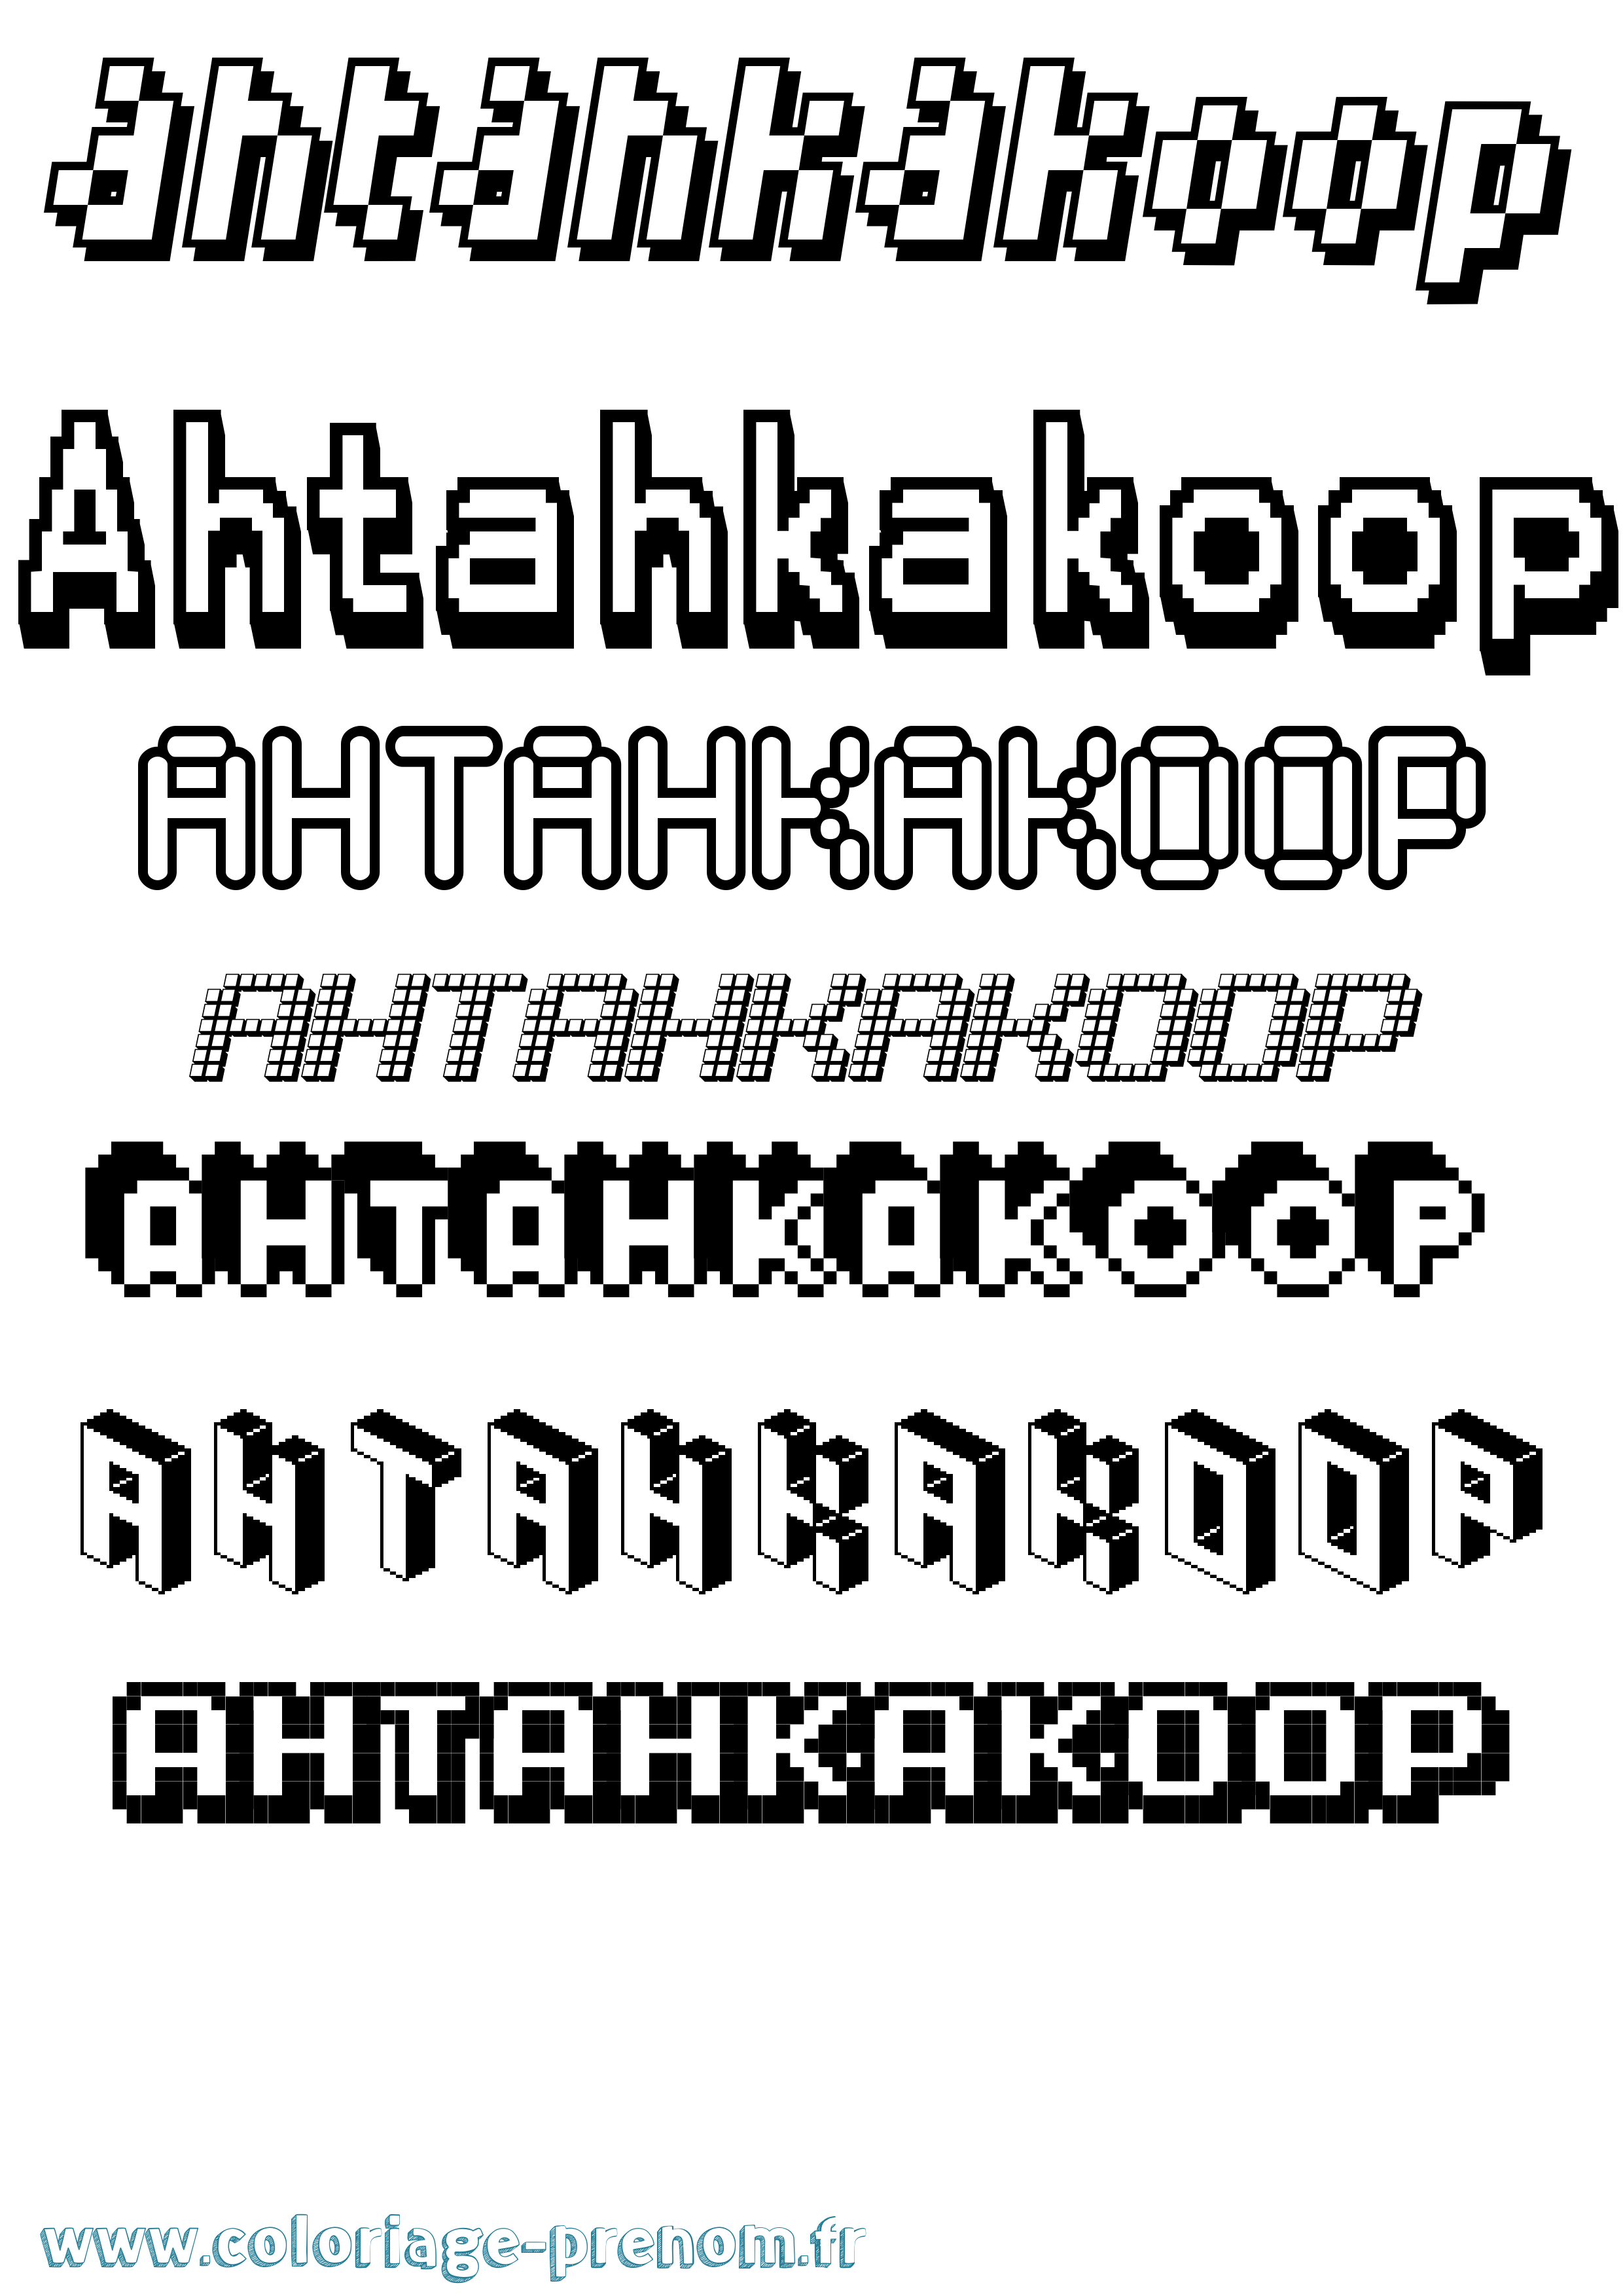 Coloriage prénom Ahtahkakoop Pixel